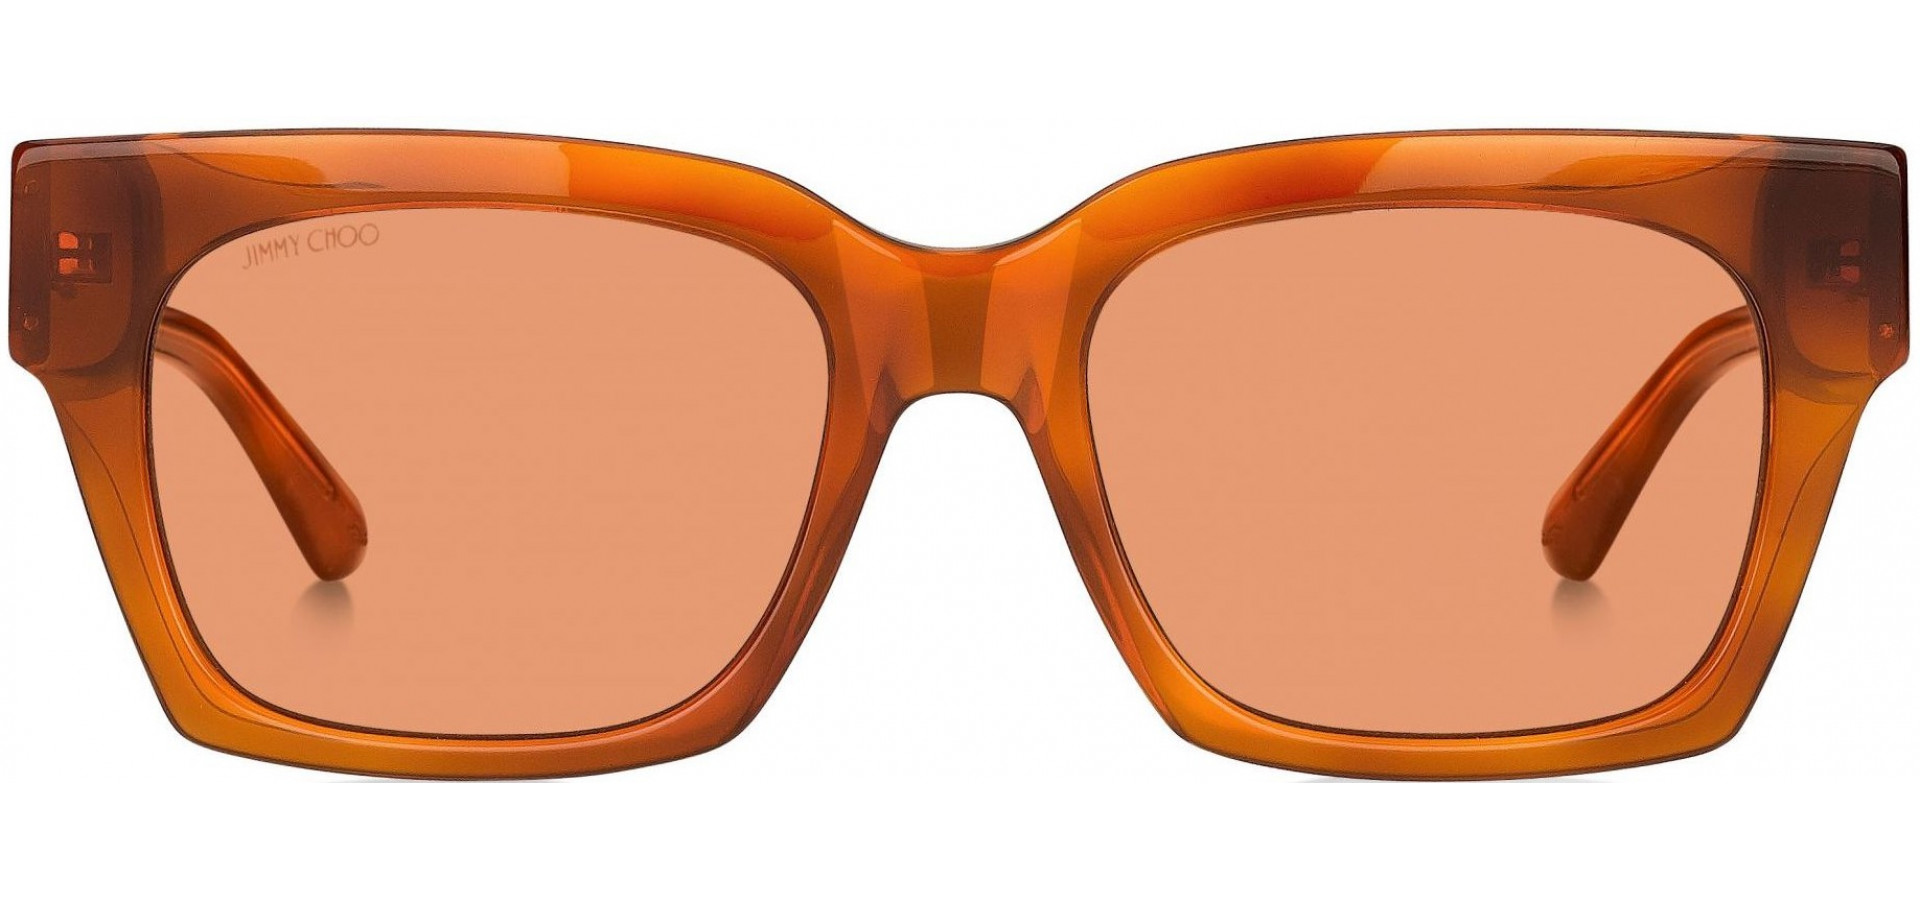 Sunčane naočale Jimmy Choo JIMMY CHOO JO: Boja: Deep Orange, Veličina: 52-18-145, Spol: ženske, Materijal: acetat